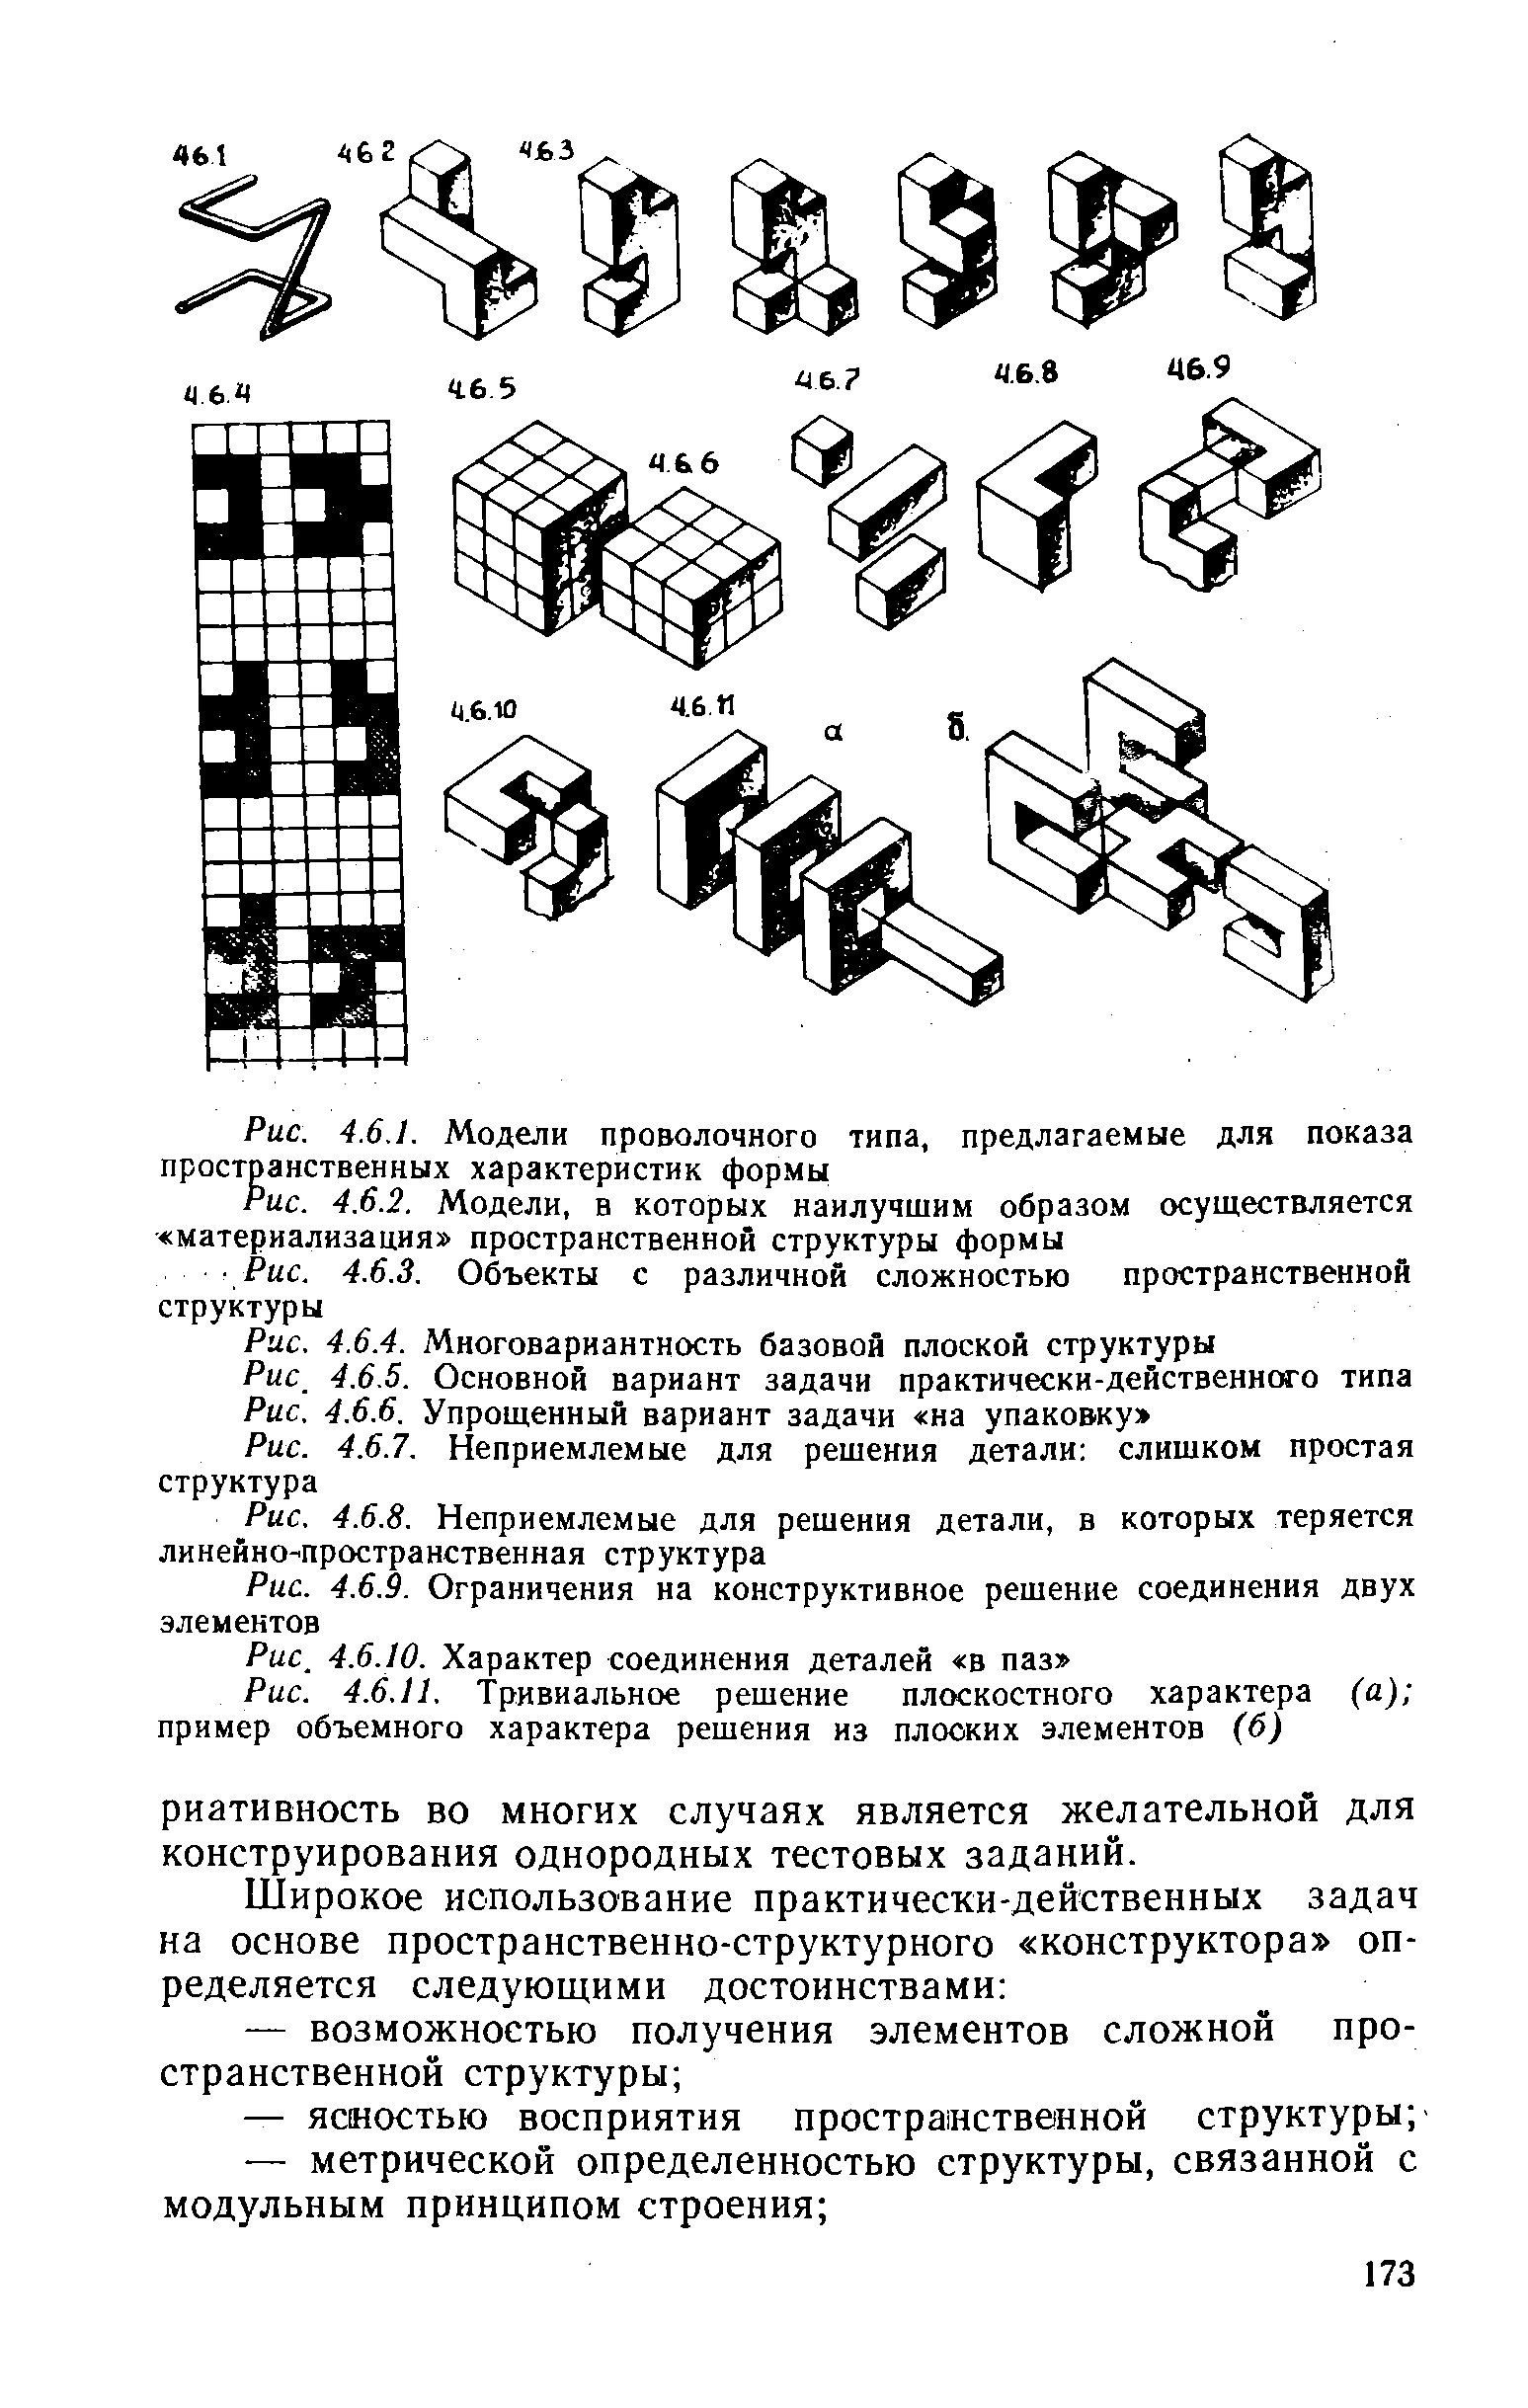 Рис. 4.6.1. Модели проволочного типа, предлагаемые для показа пространственных характеристик формы
